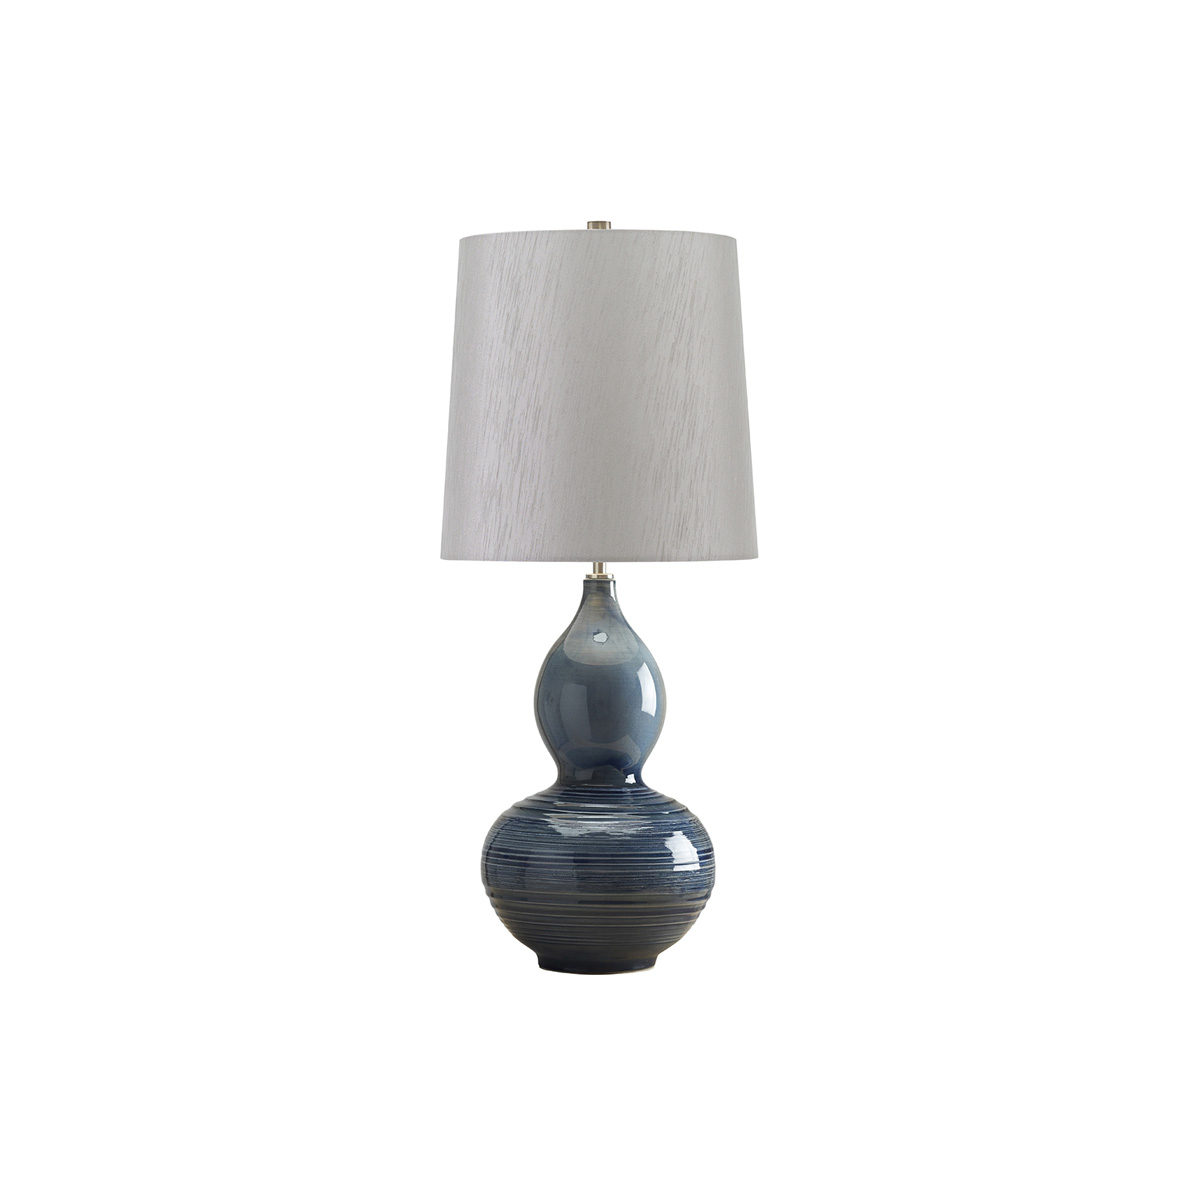 Настольная лампа LAPIS-GOURD-TL, Настольные лампы Ар-деко/Эклектика | Керамика | Прихожая, спальня, гостиная, столовая.